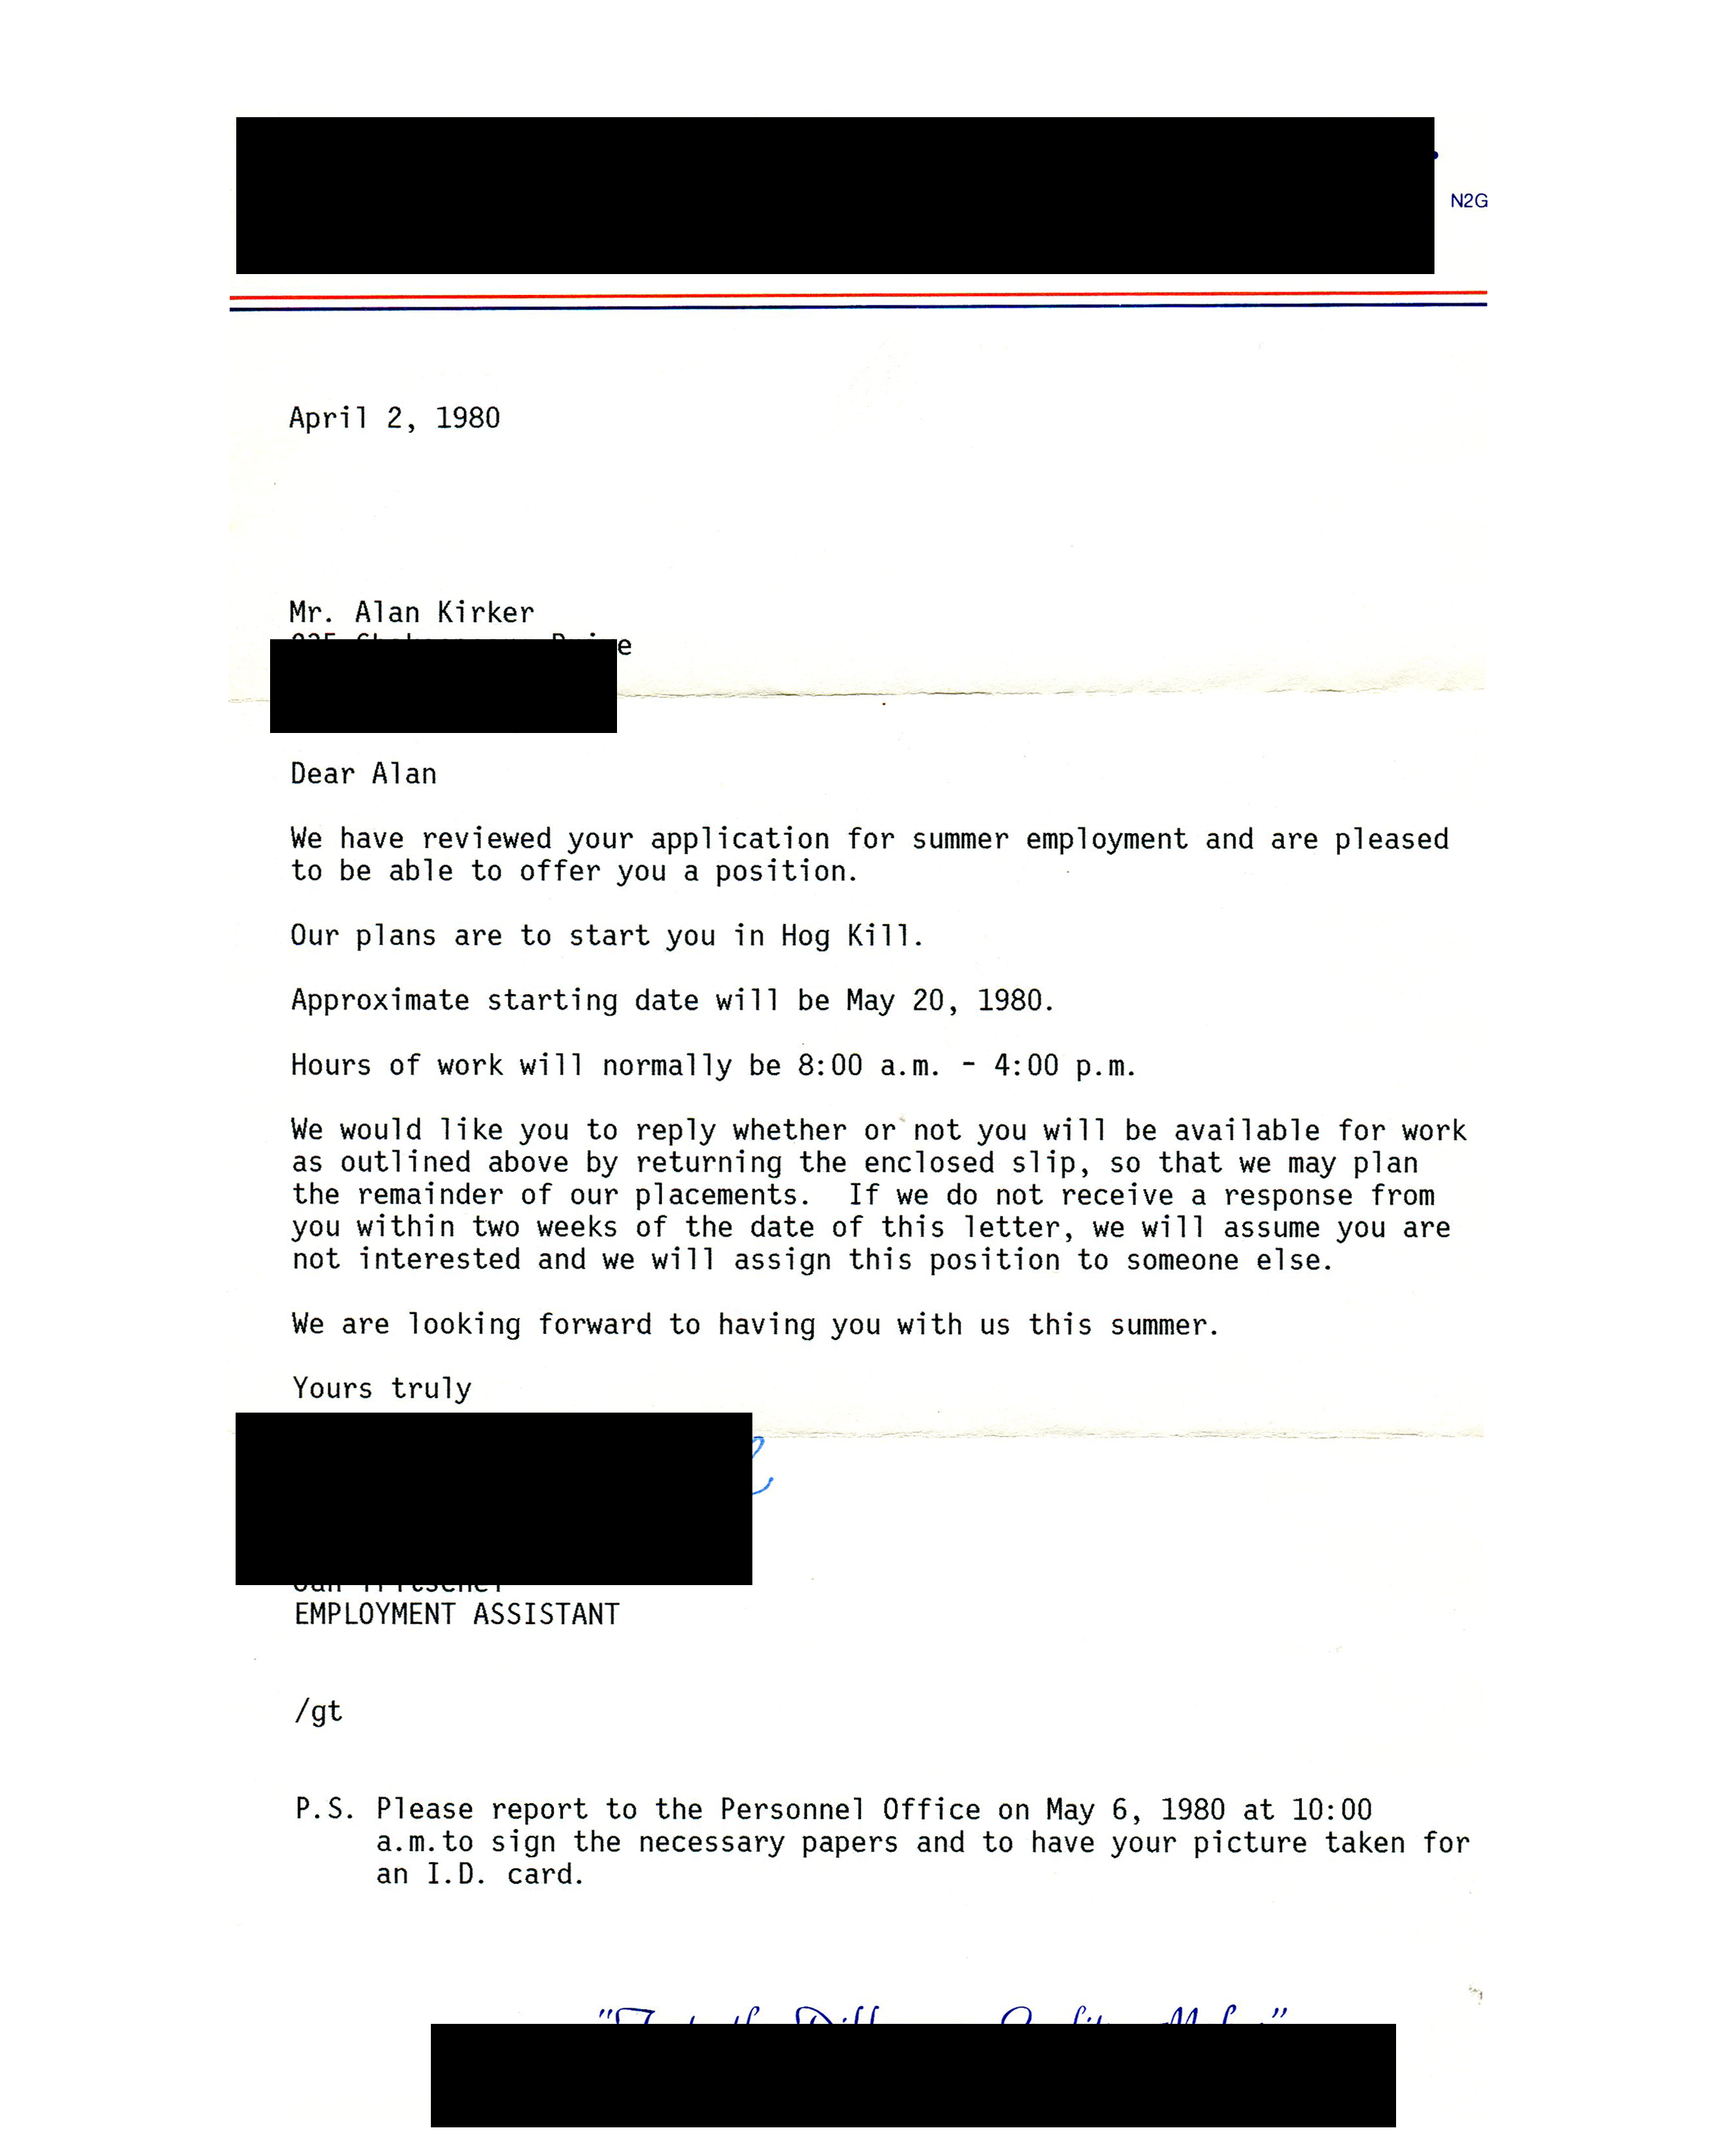 summer employment offer letter 1980